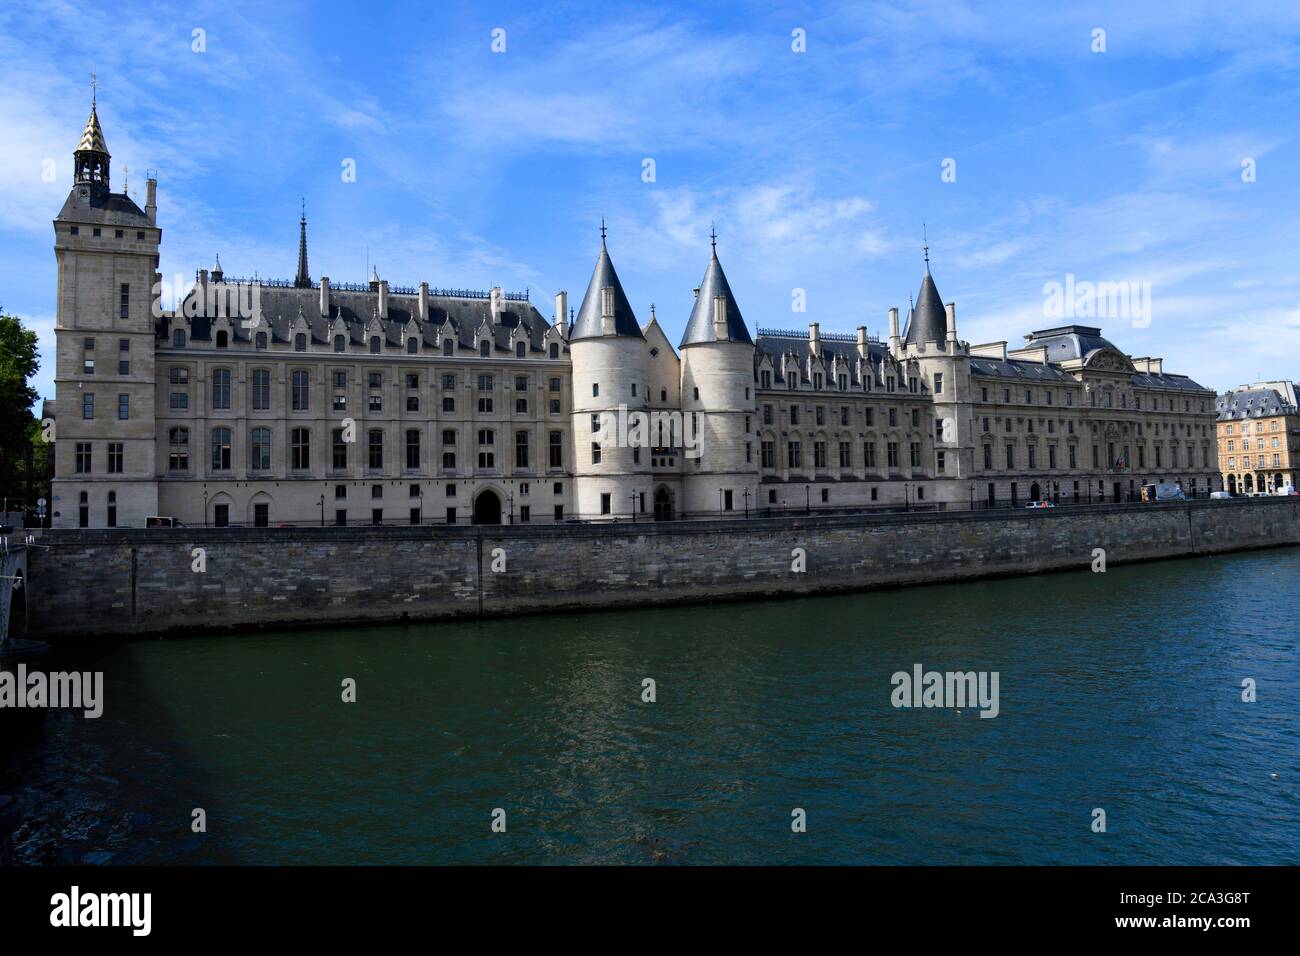 Palais de Justice and River Seine,Paris,France. Stock Photo